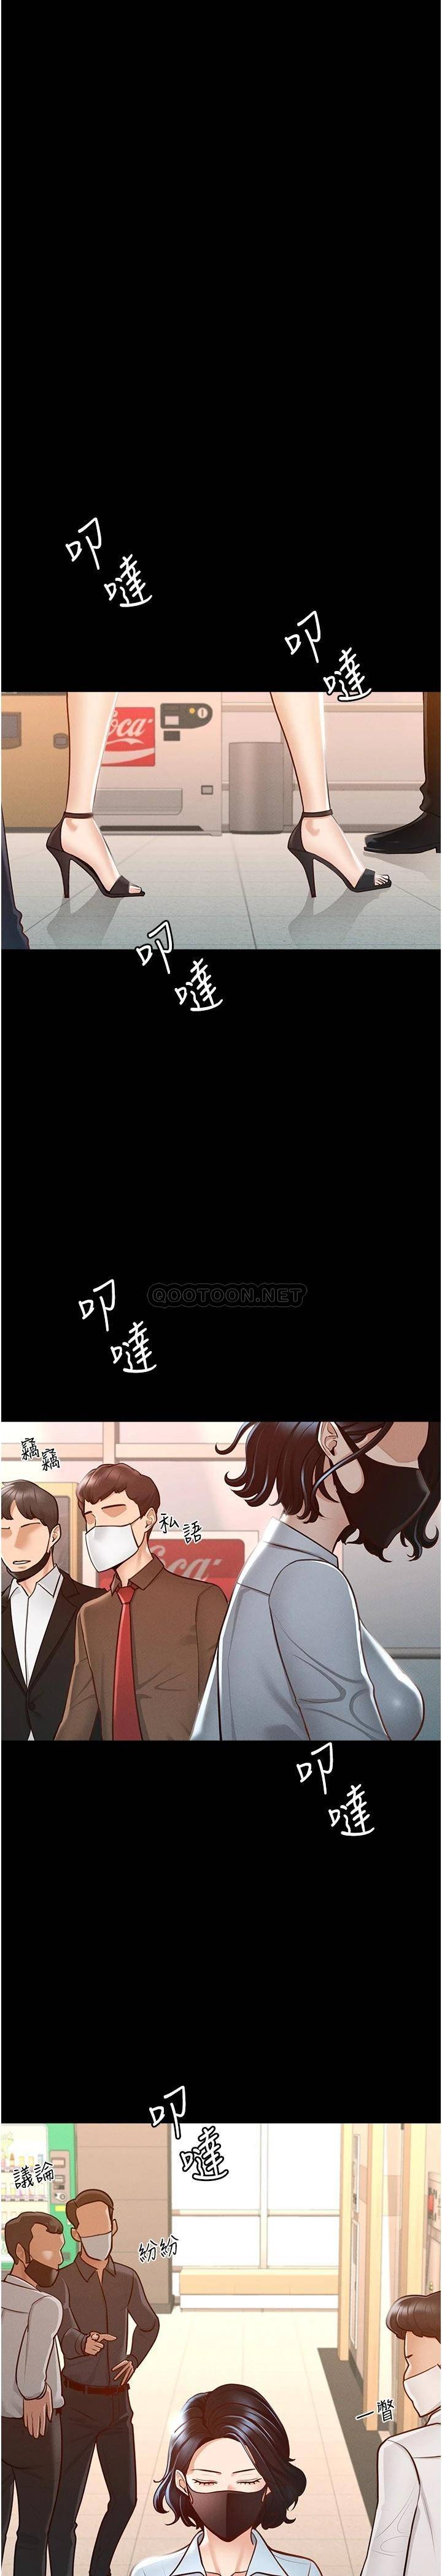 韩国污漫画 超級公務員 第8话 眼前的「性」福最重要! 5